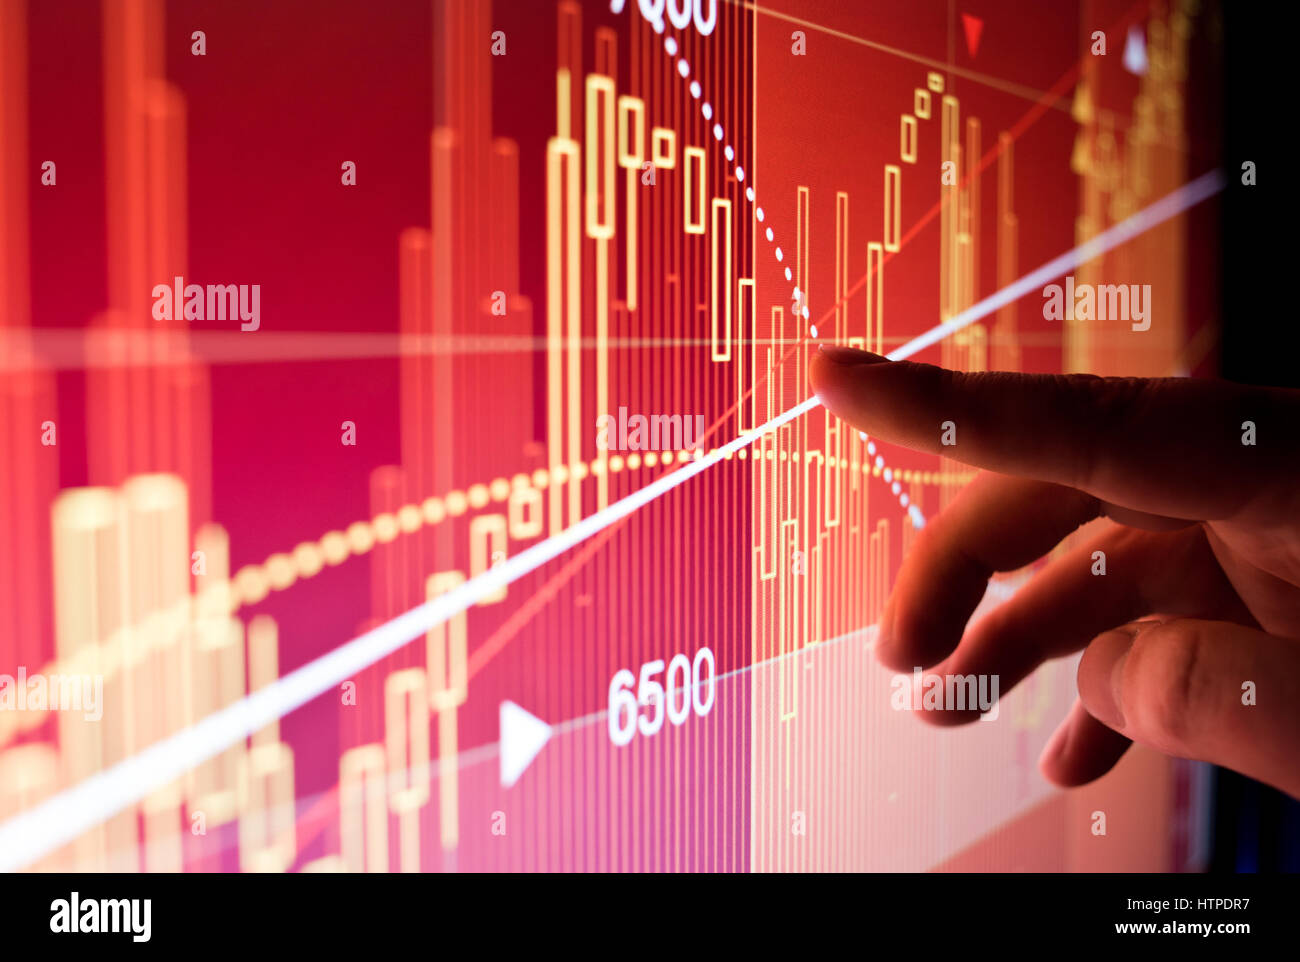 Un travailleur de la ville illustre l'analyse des données financières de marché boursier sur un écran. Banque D'Images